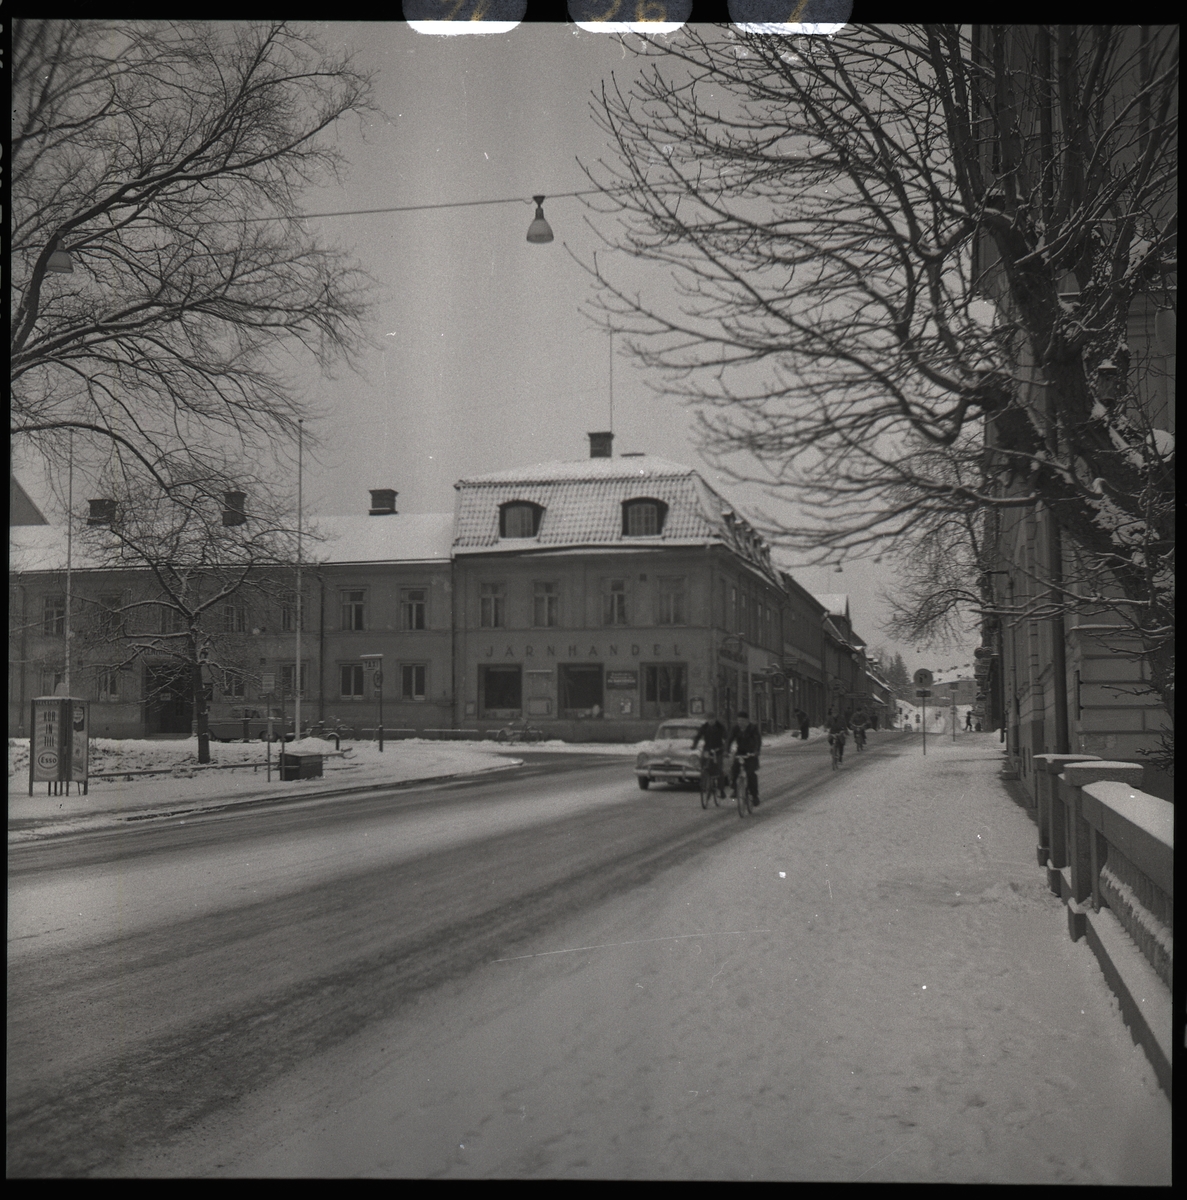 Korsningen Stora gatan/Slottsgatan, Västerås.